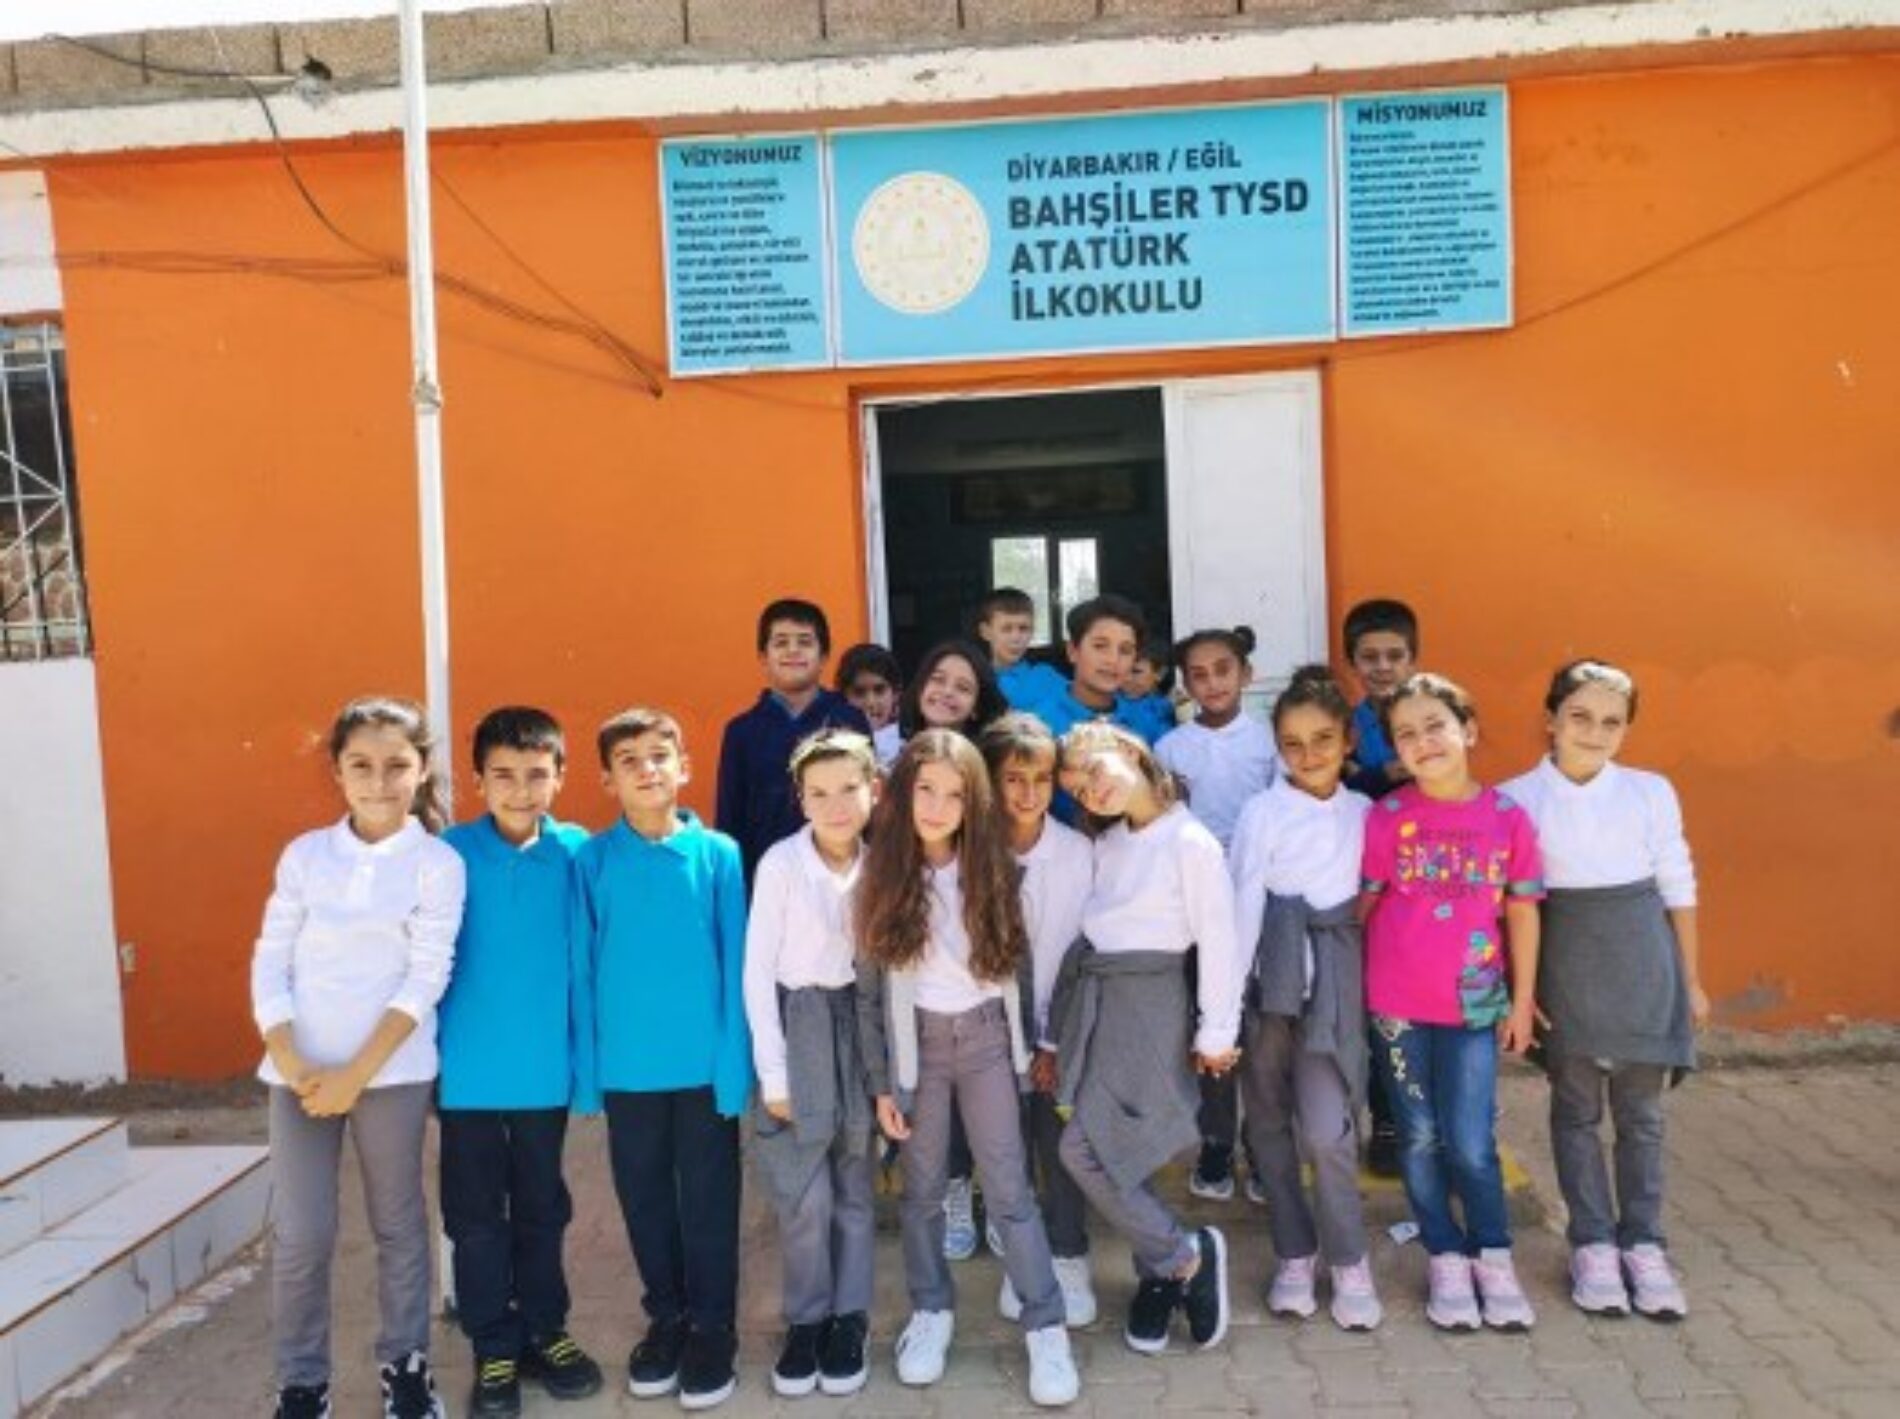 TYSD Genel Merkezi ve 130 Şubemiz Diyarbakır Eğil İlçesi Bahşiler Köyü TYSD Atatürk İlk ve Ortaokul Öğrencilerimize Forma Yardımında Bulunmuştur